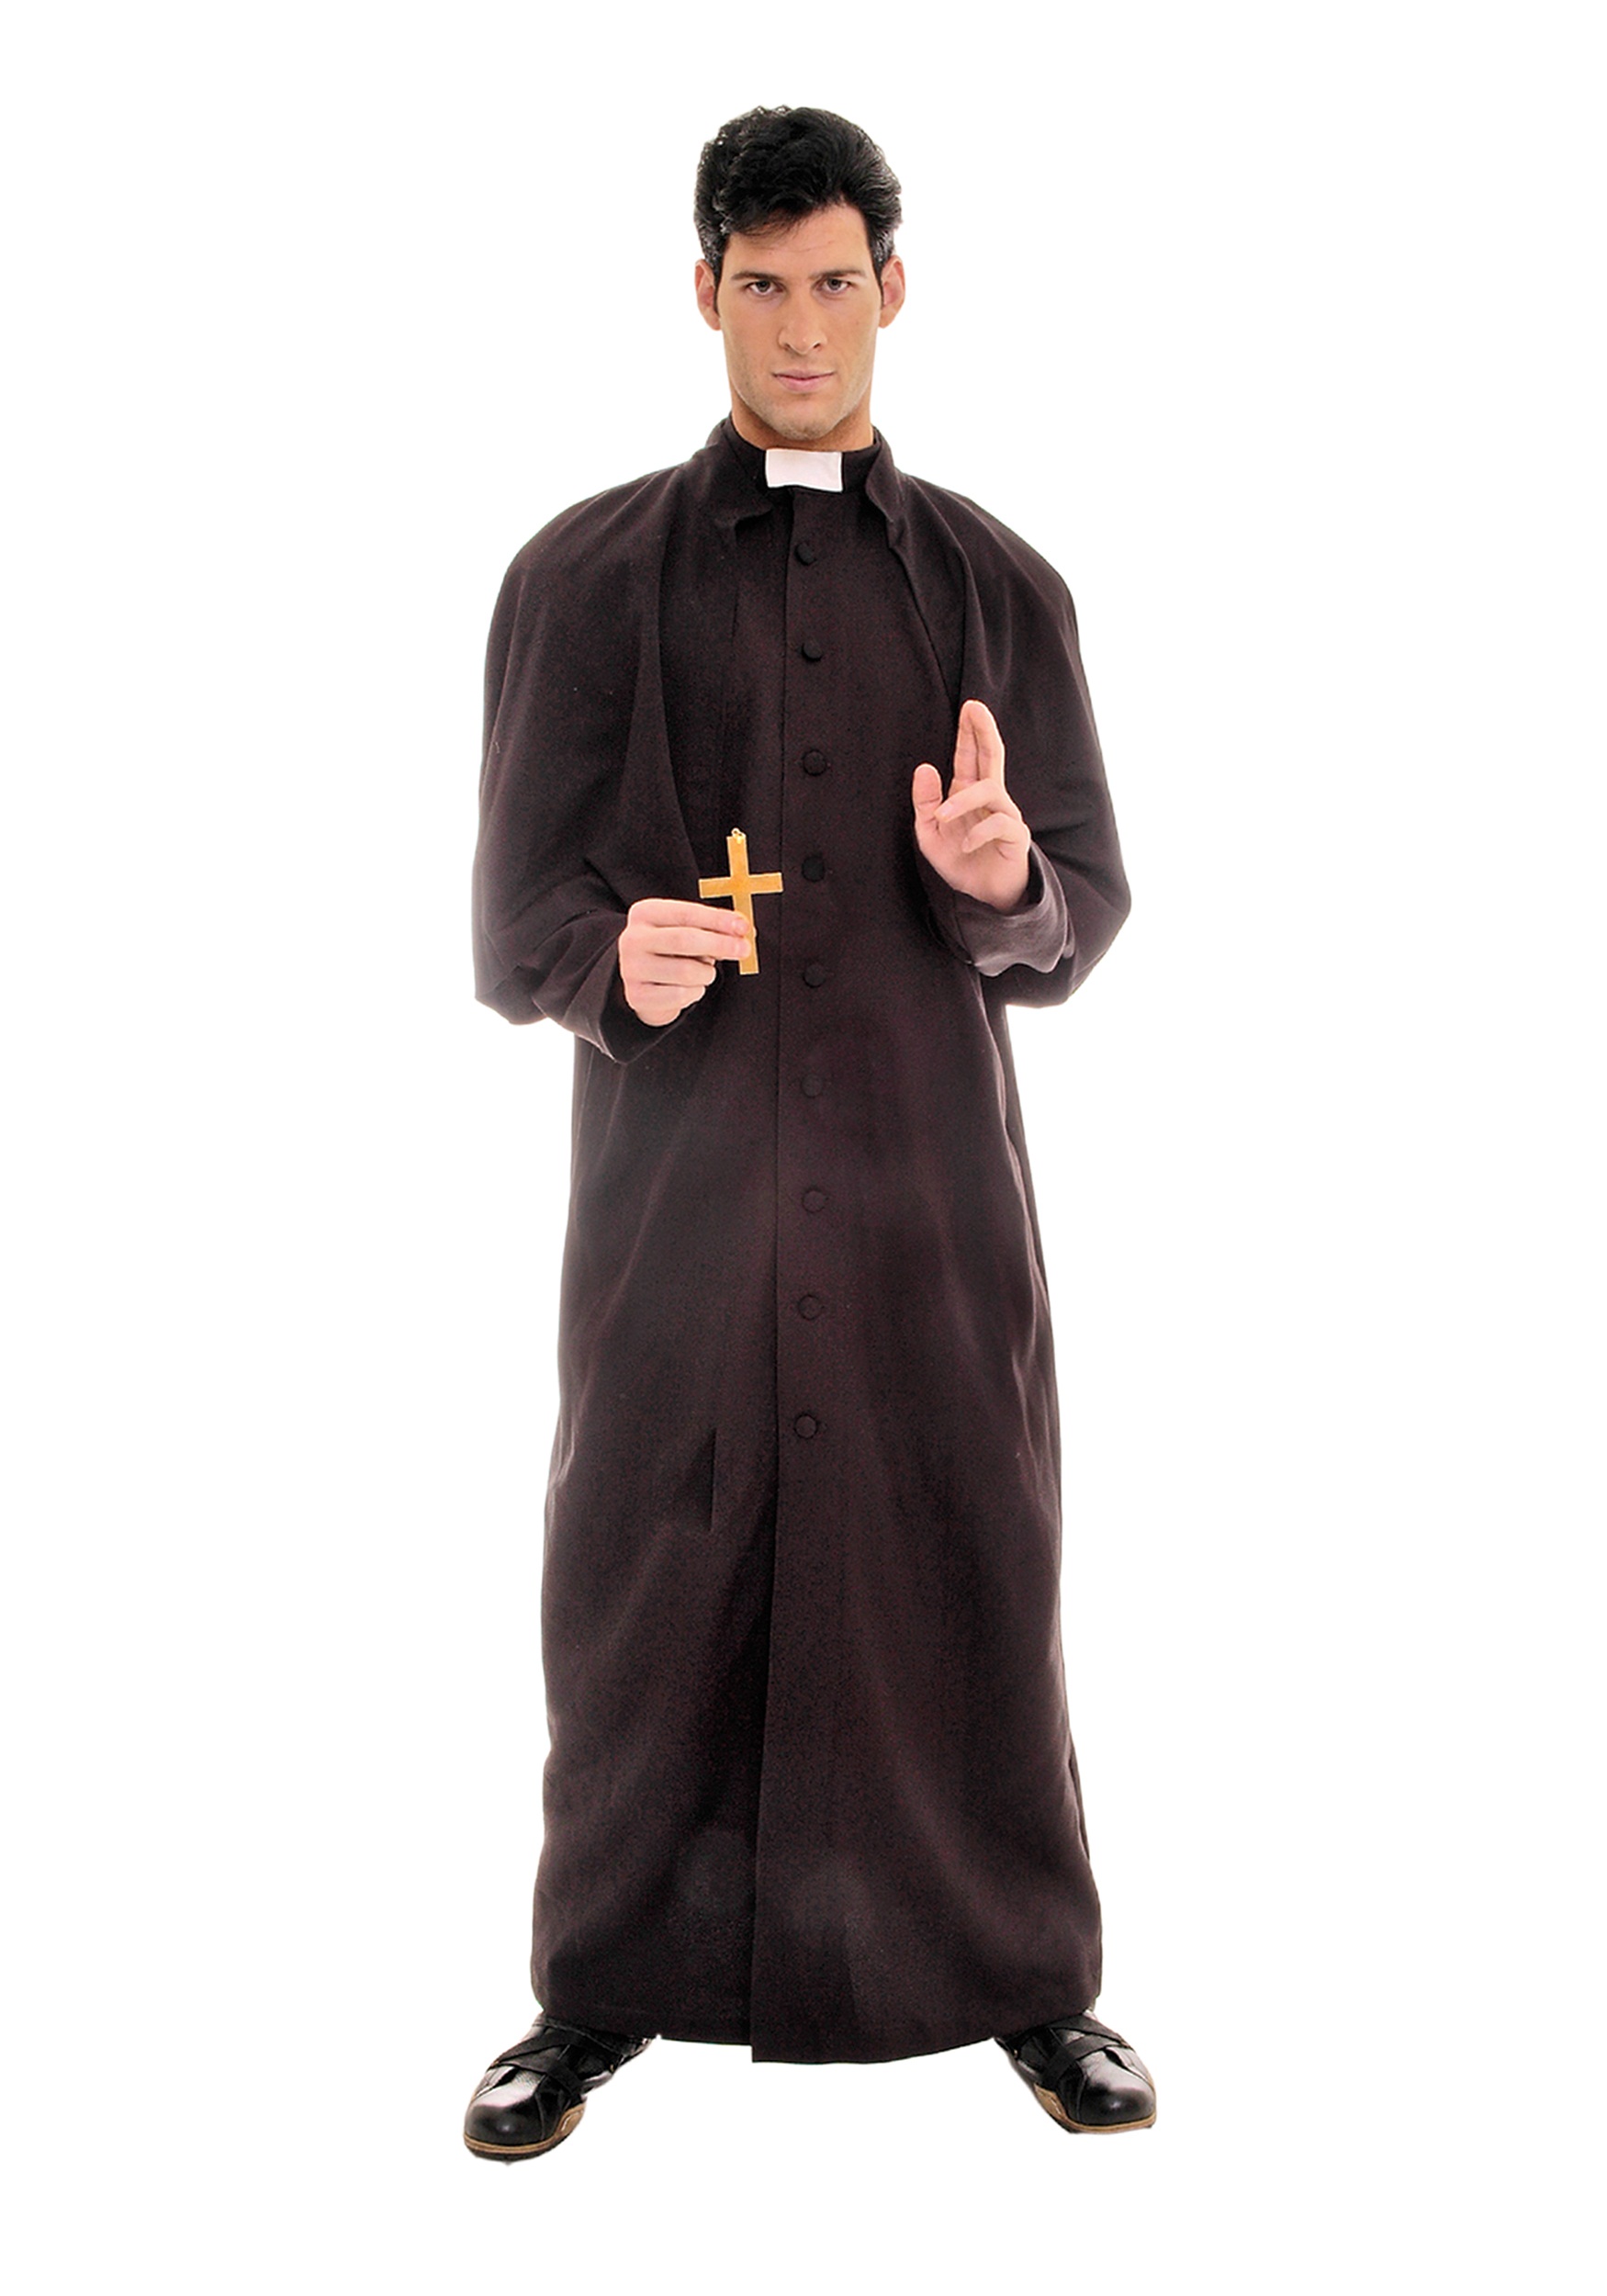 Платье священника. Ряса монаха Католика. Ряса священника Католика. Сутана католического священника. Монашеская сутана католическая Церковь.